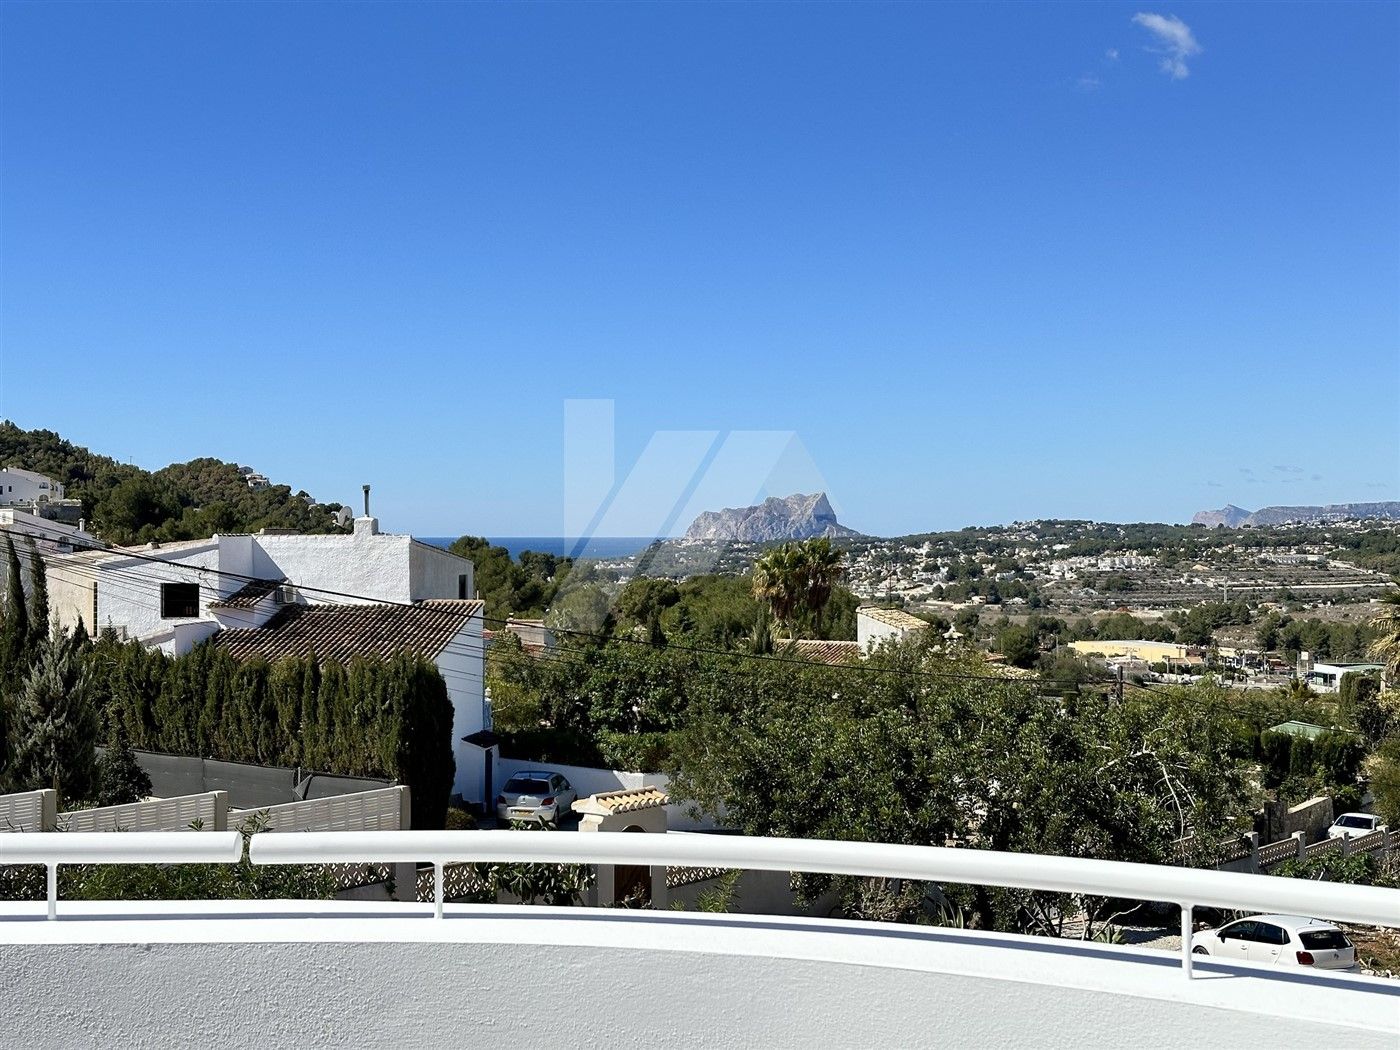 Villa in Ibicencan stijl te koop met uitzicht op zee, vlakbij Moraira.